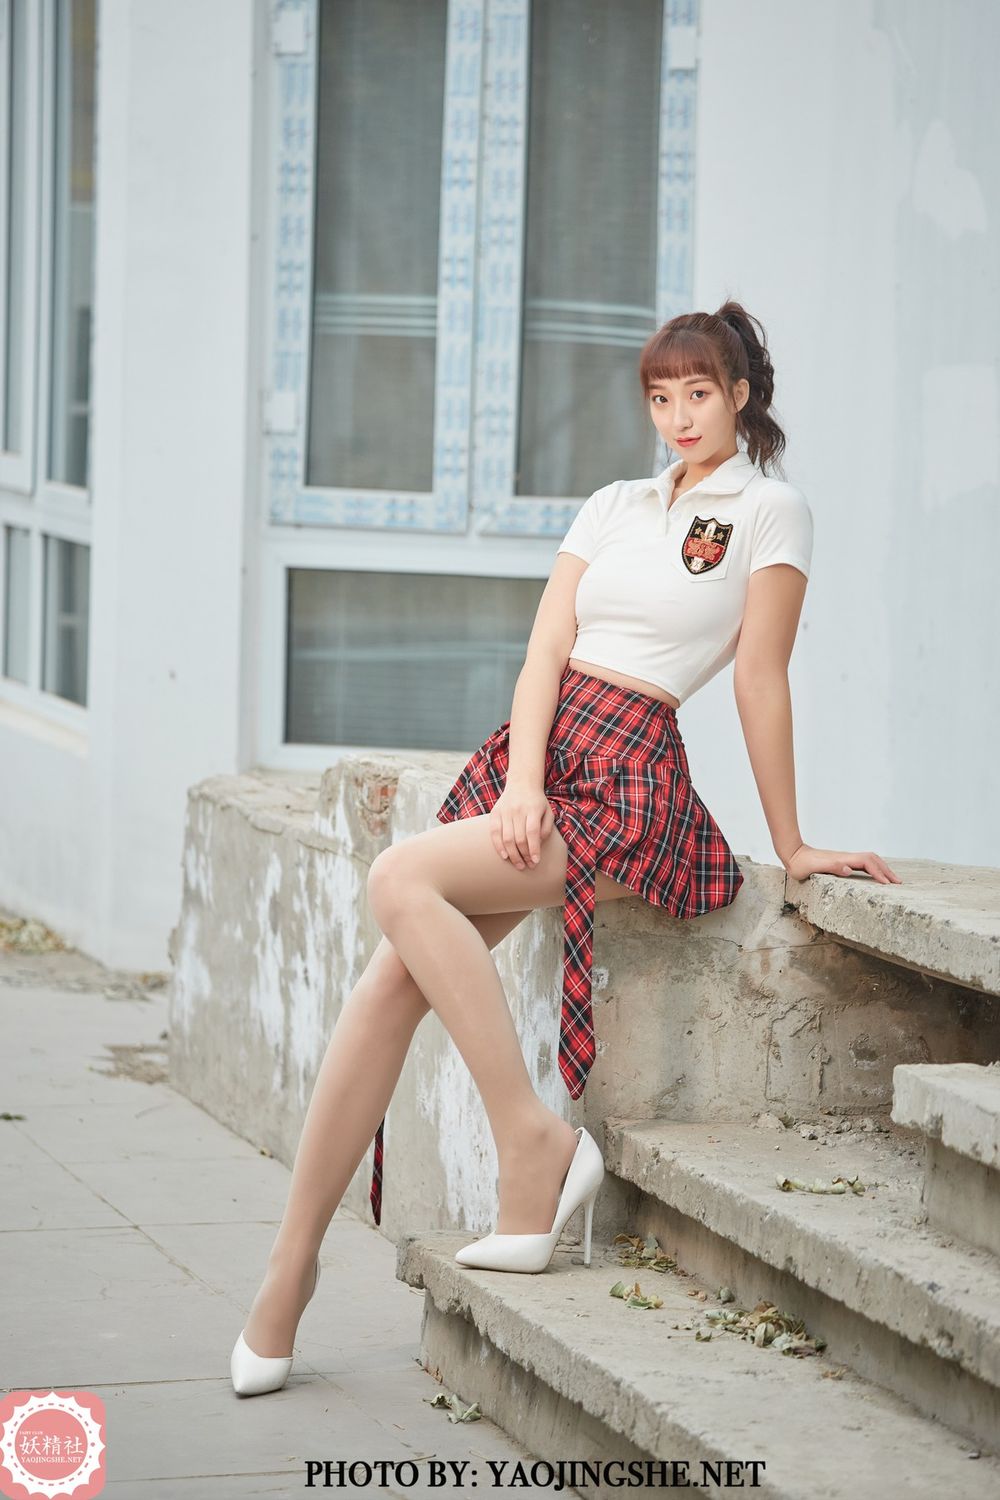 美女模特李佳儿学生制服红色格子裙假日主题套图